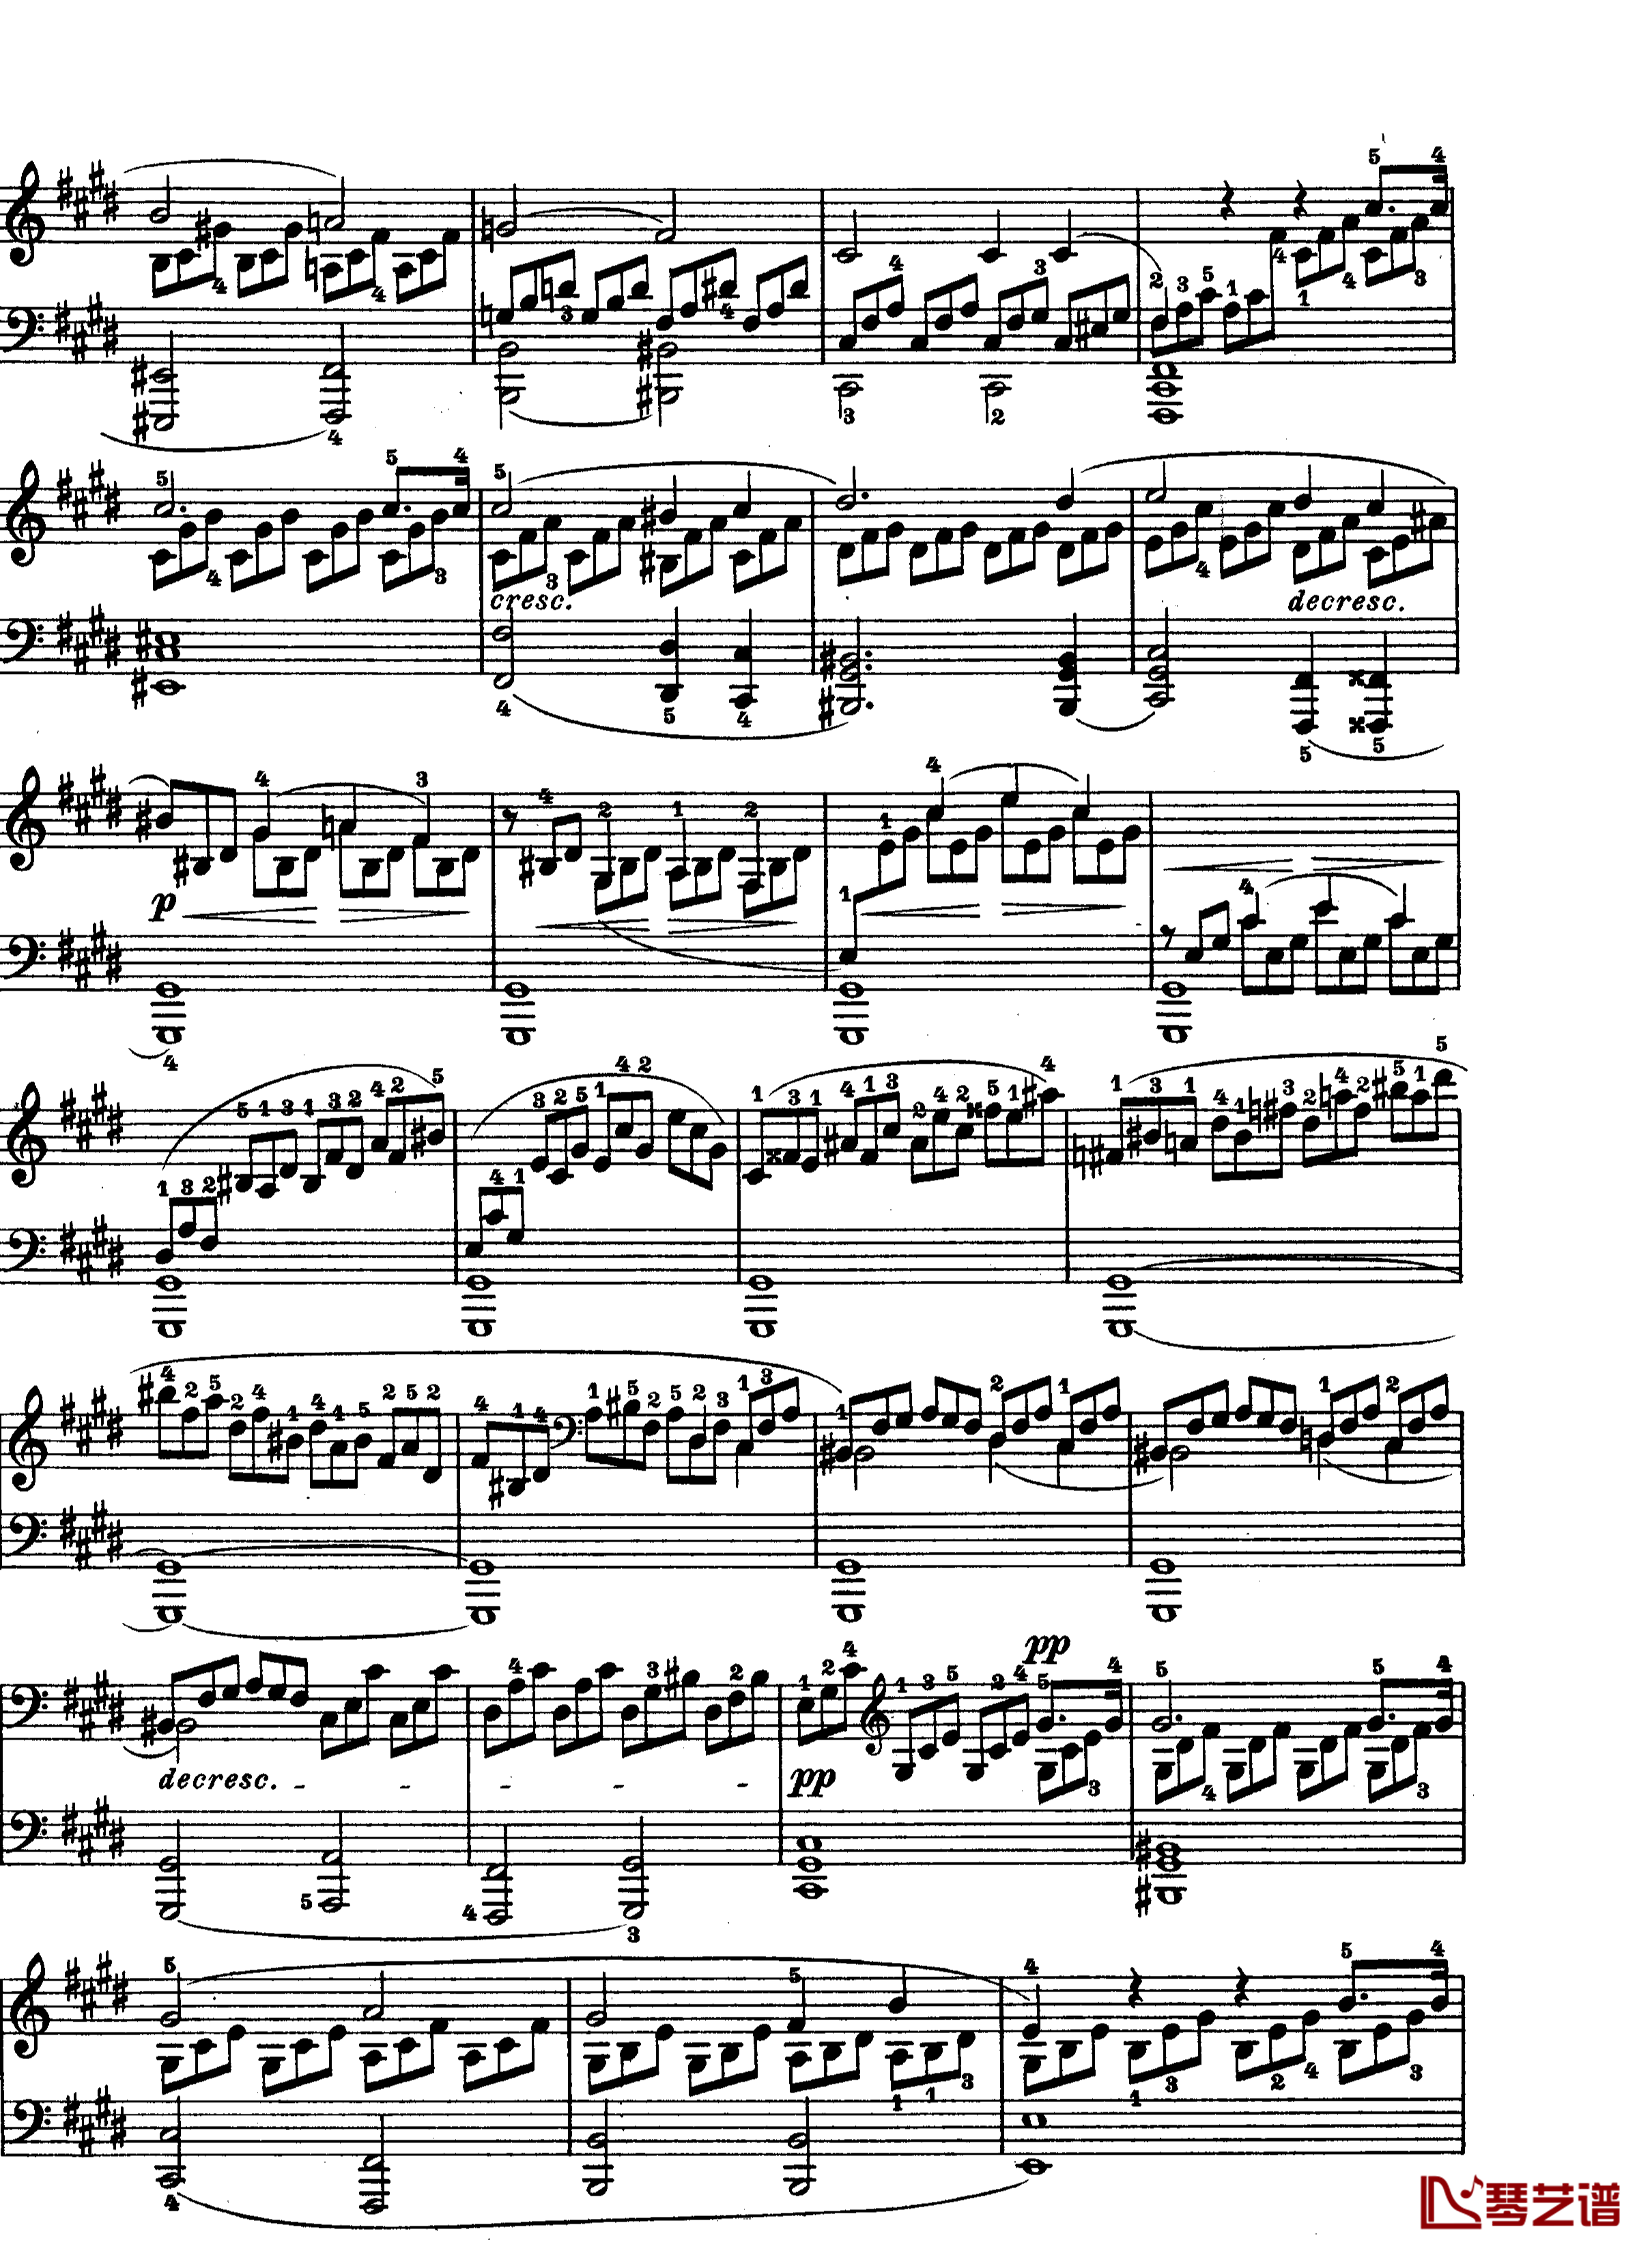 月光曲钢琴谱-第十四钢琴奏鸣曲-Op.27 No.2-贝多芬-beethoven2